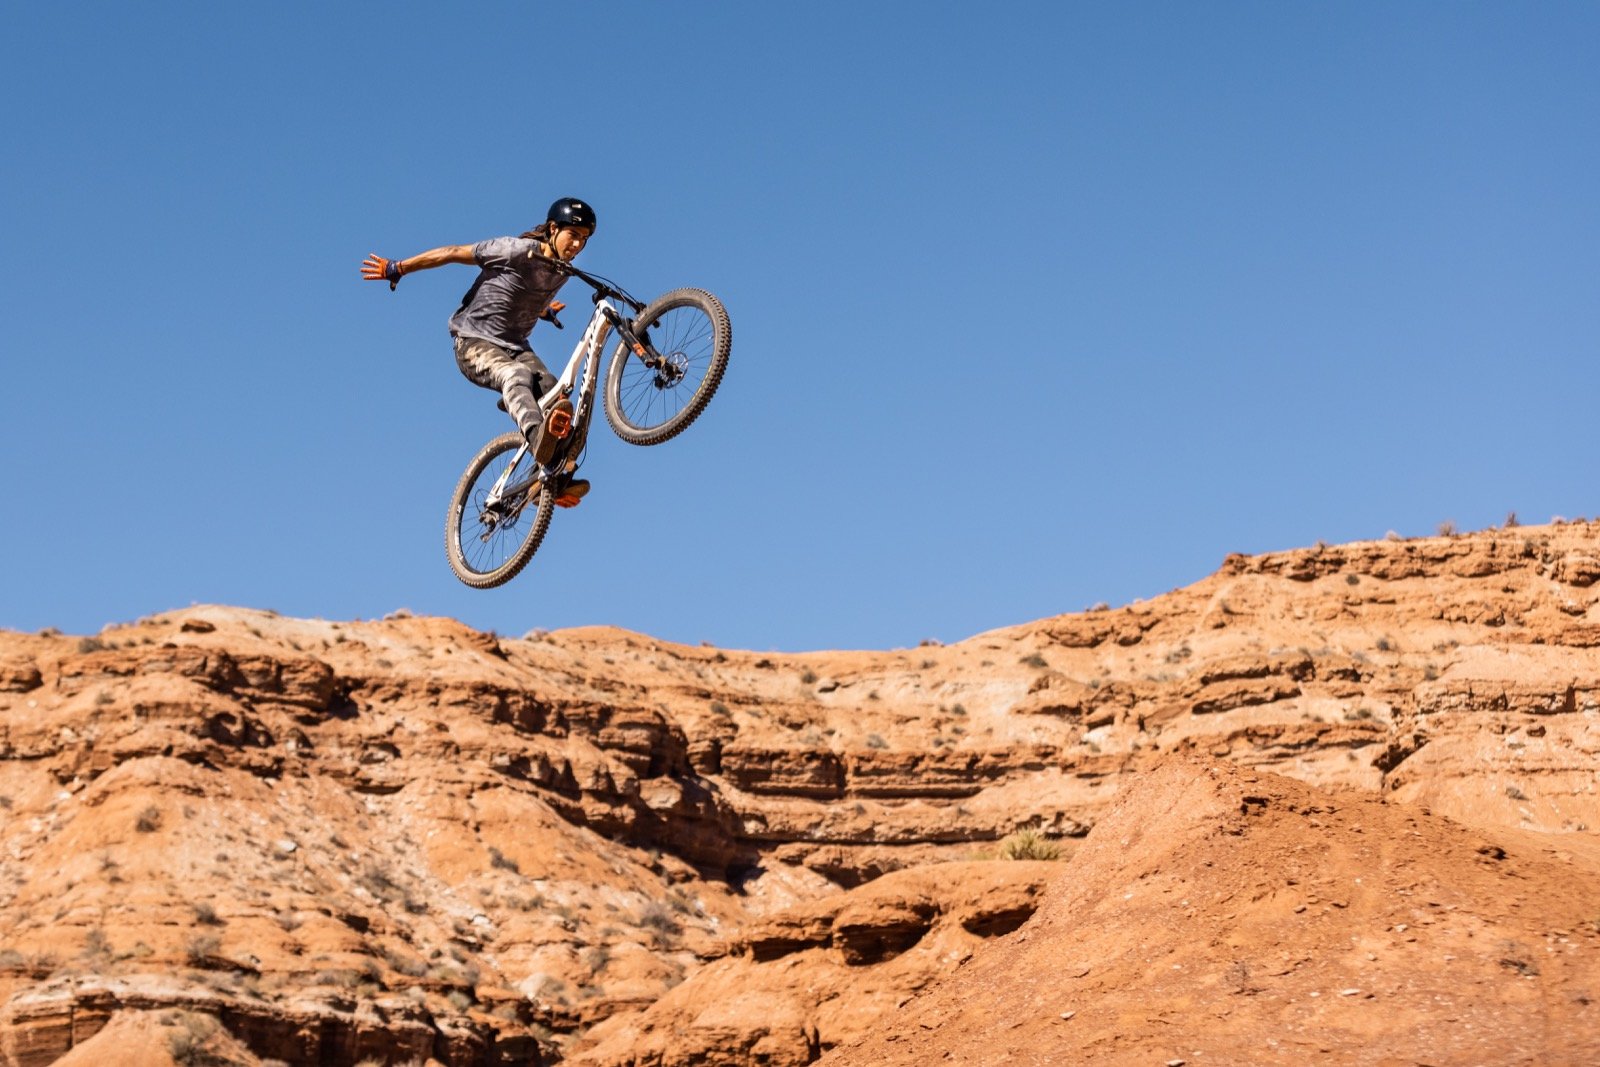 emily-sierra-photography-action-desert-freeride-mountain-bike-virgin-utah-4.jpg